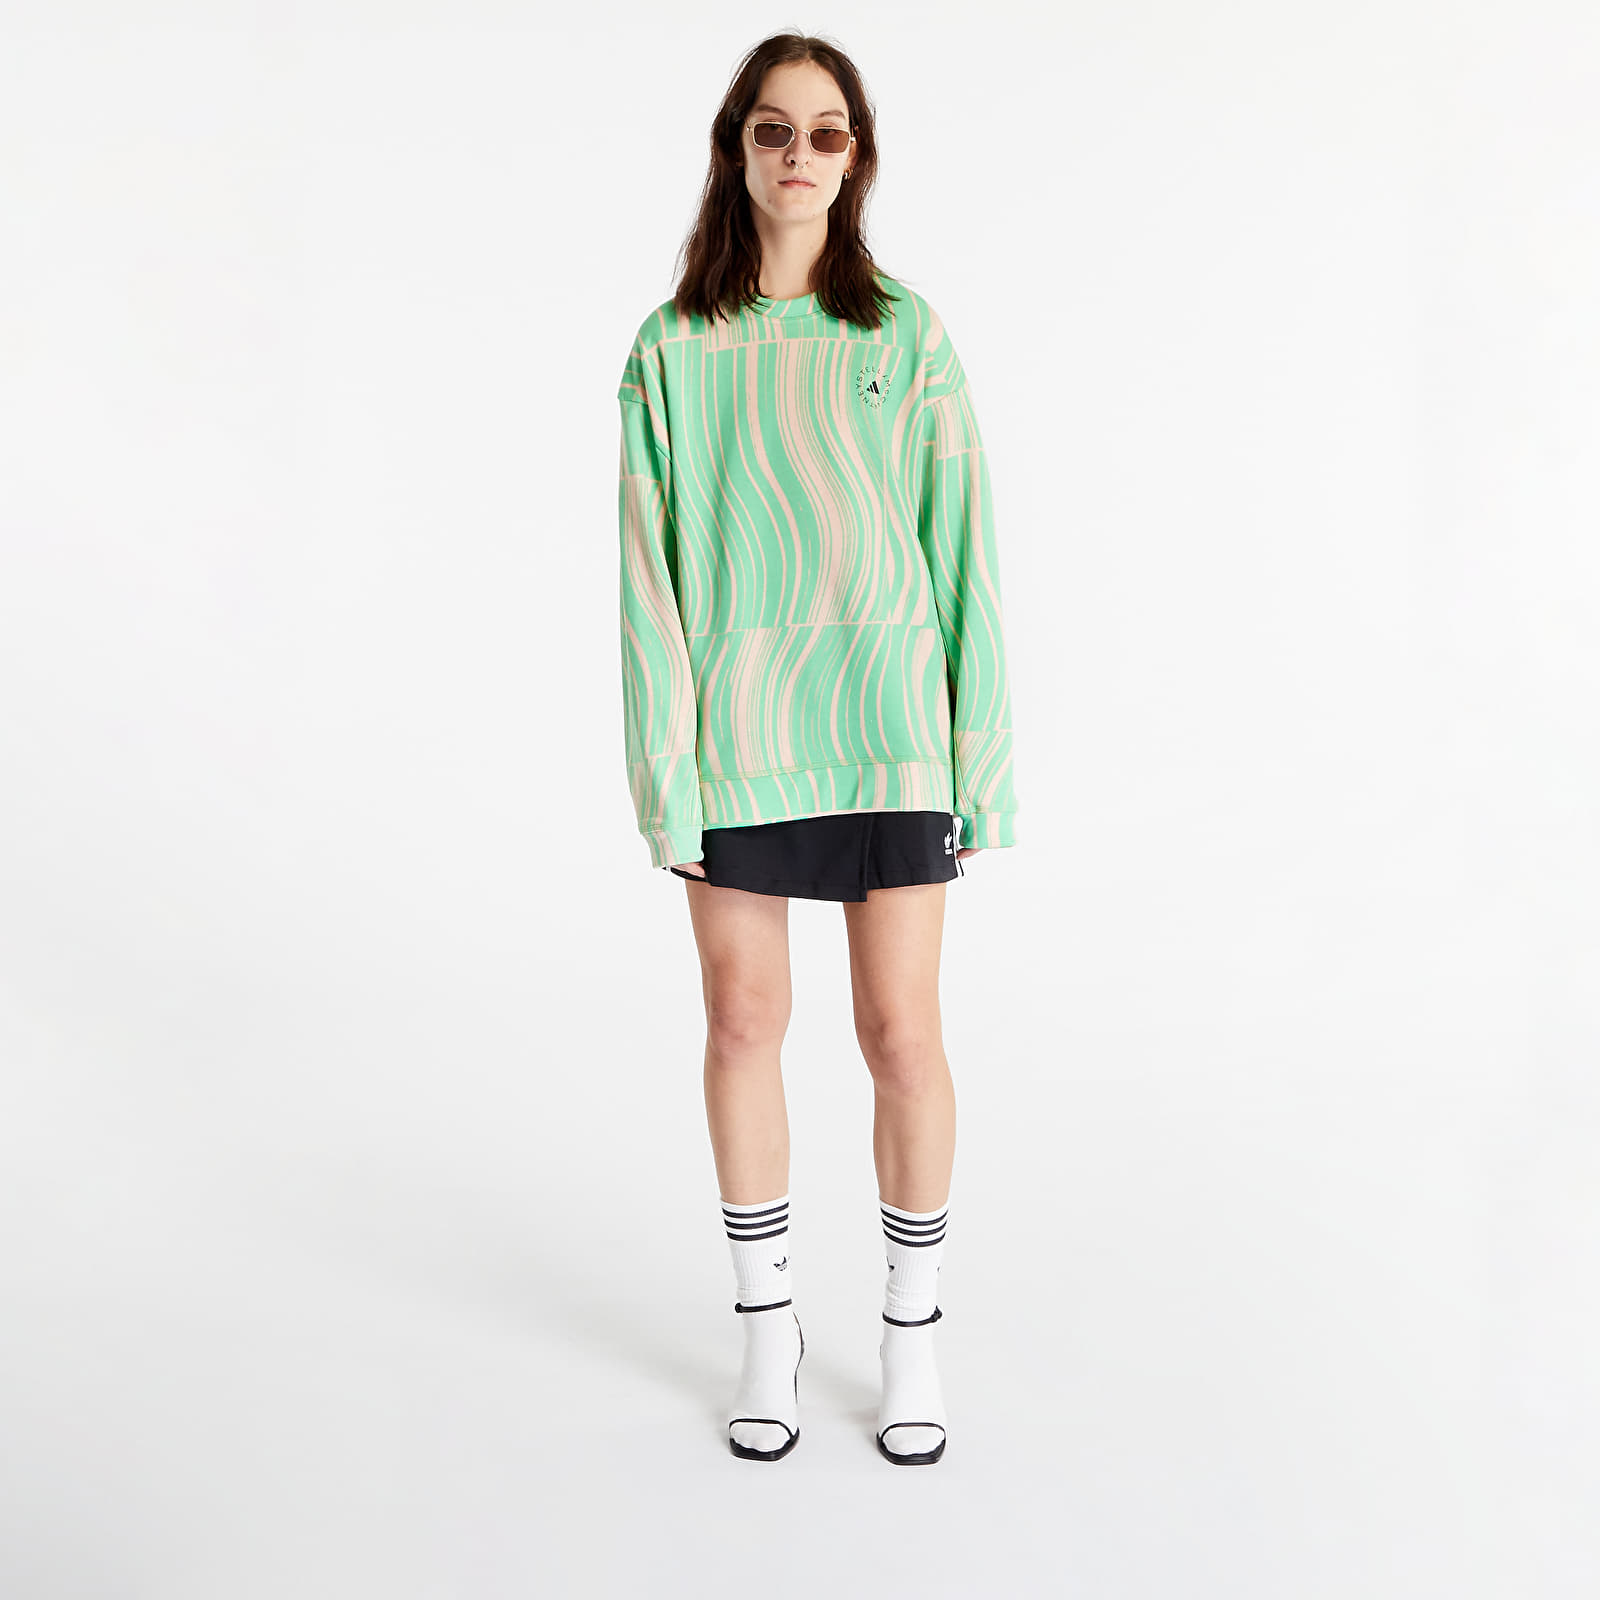 Dukserice adidas x Stella McCartney Truecasuals Graphic Sweatshirt Screaming Green/ Blush Pink